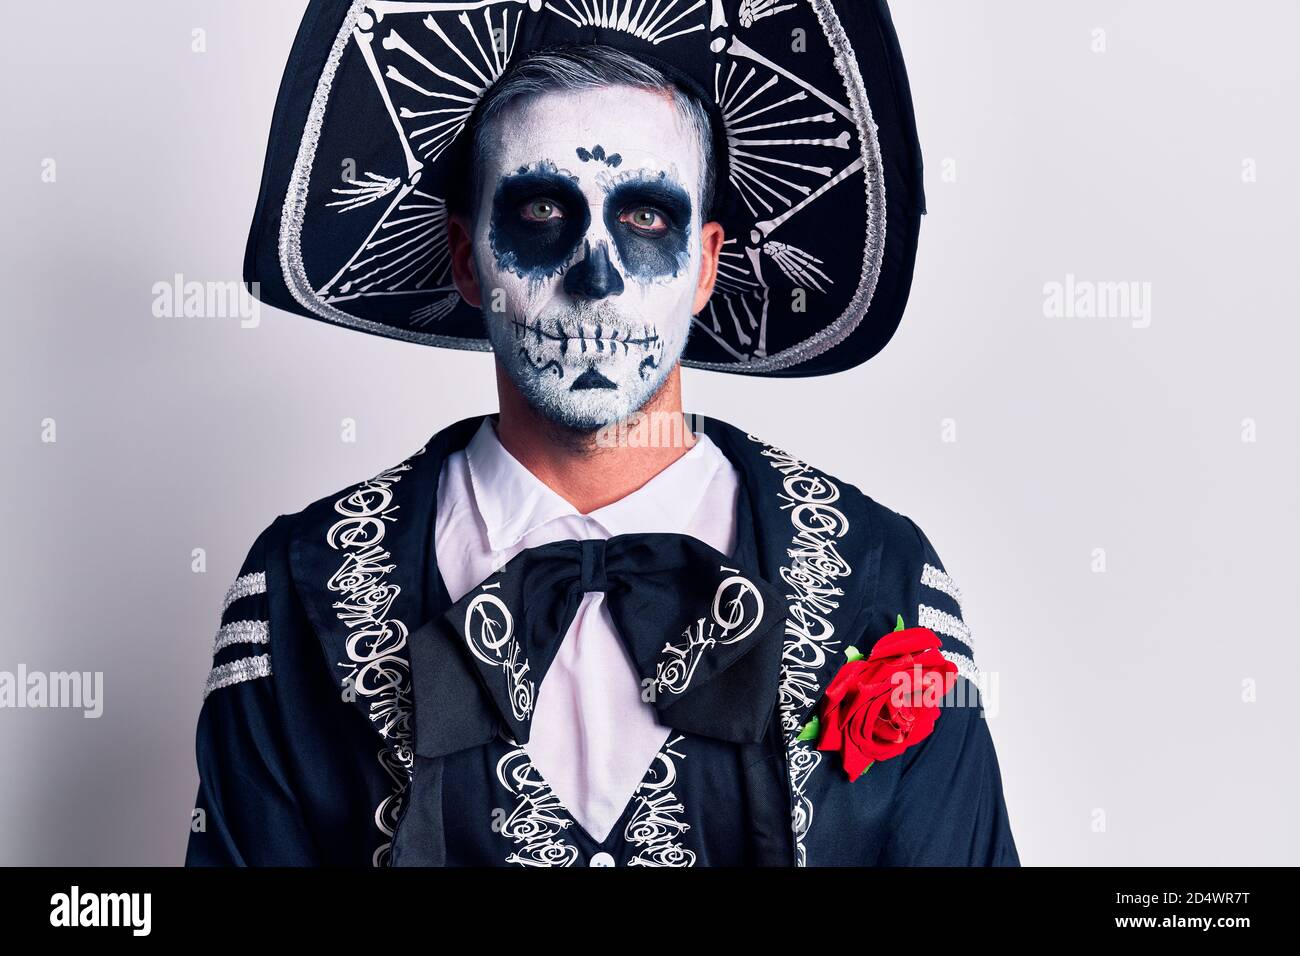 Uomo spaventoso indosso giorno del deadmake up e costume Dal rituale tradizionale in Messico Foto Stock